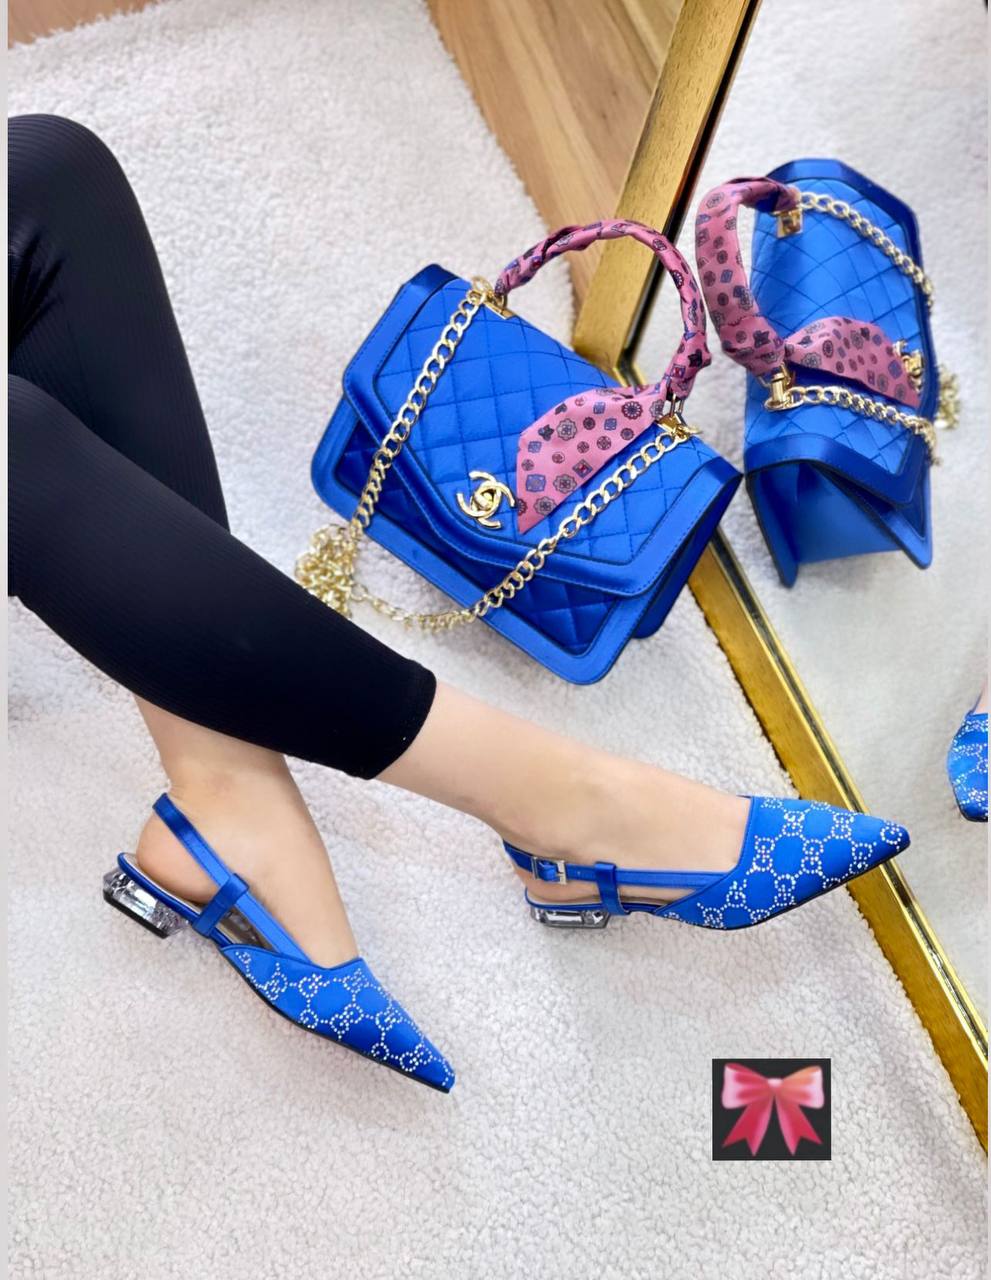 Chanel heels and handbag